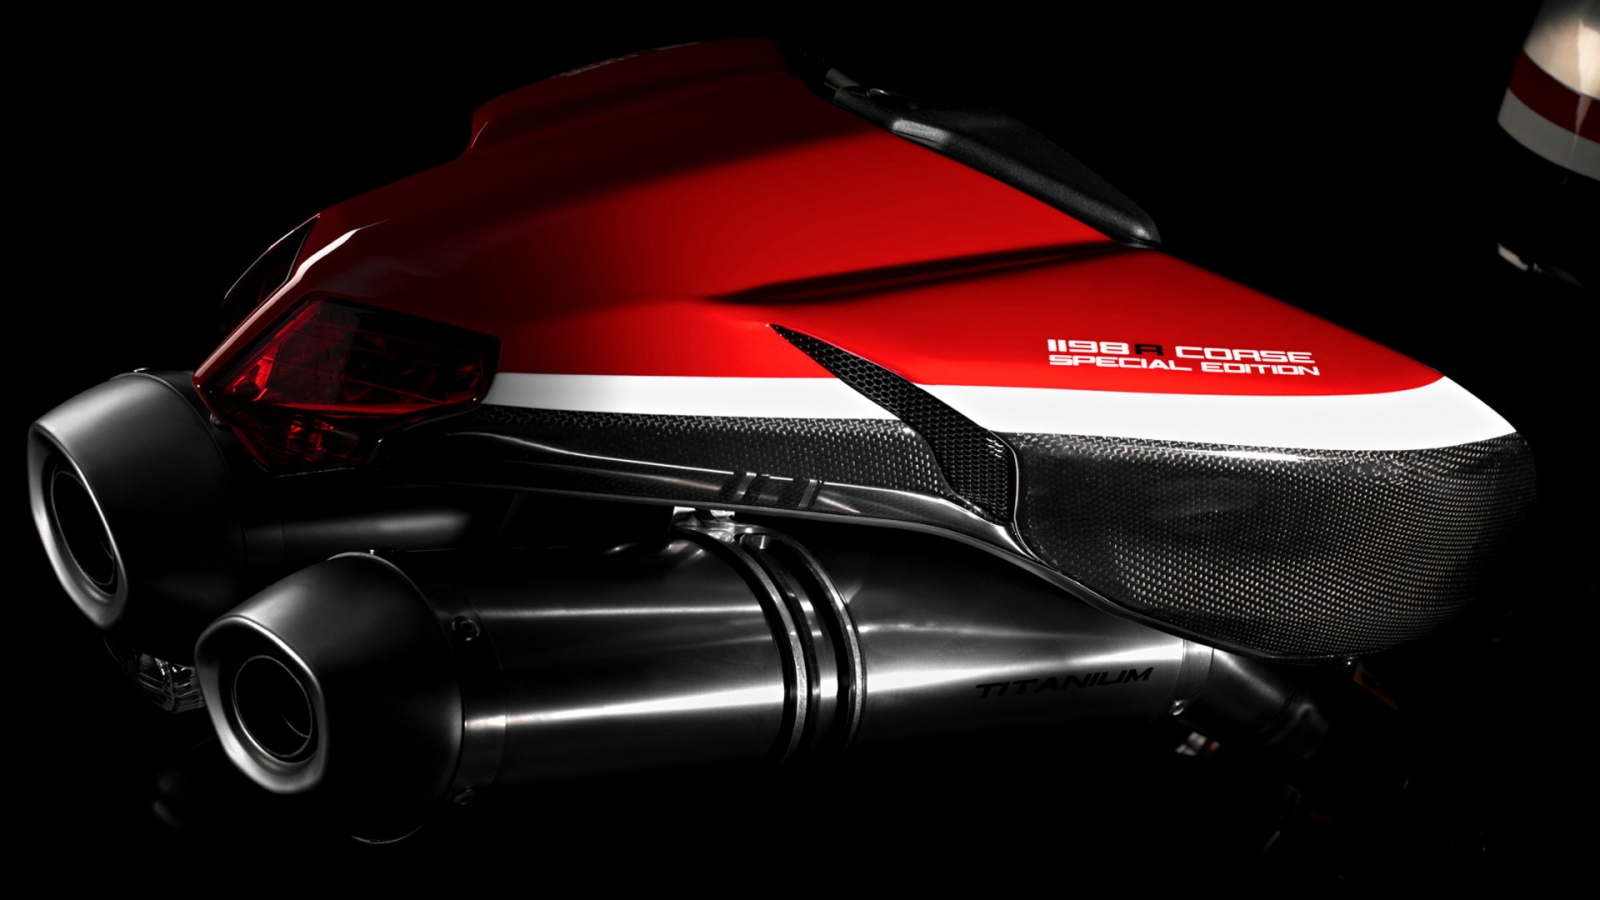 Ducati Superbike-1198-R-Corse Rear for 1600 x 900 HDTV resolution